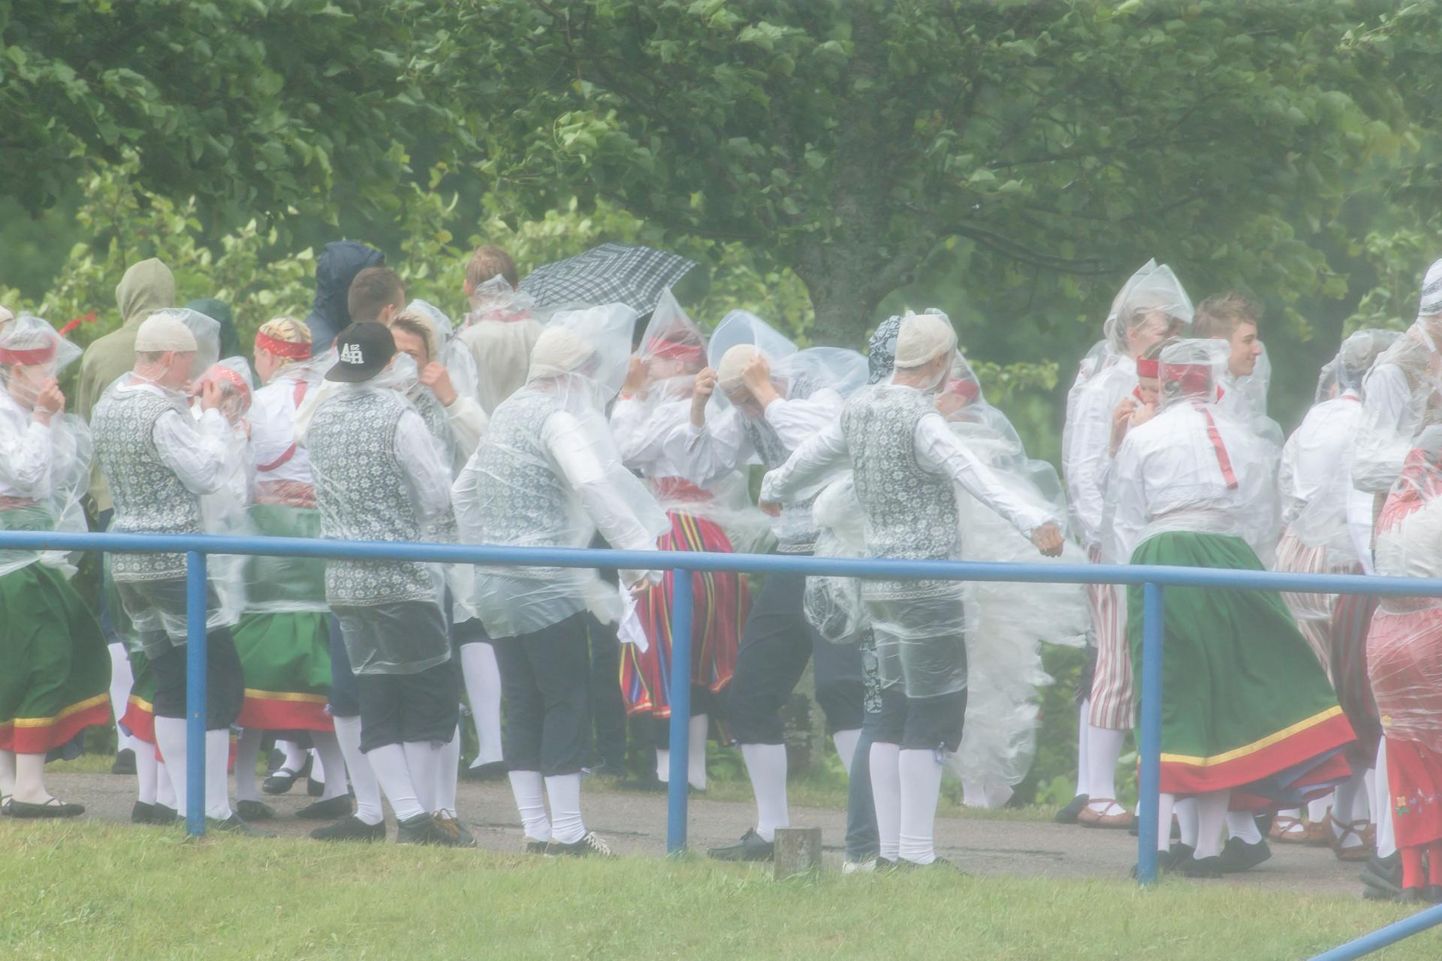 Pilt on illustreeriv. Suurel peol tuleb tantsijatel ja lauljatel trotsida nii vihma kui kõrvetavat päikest.